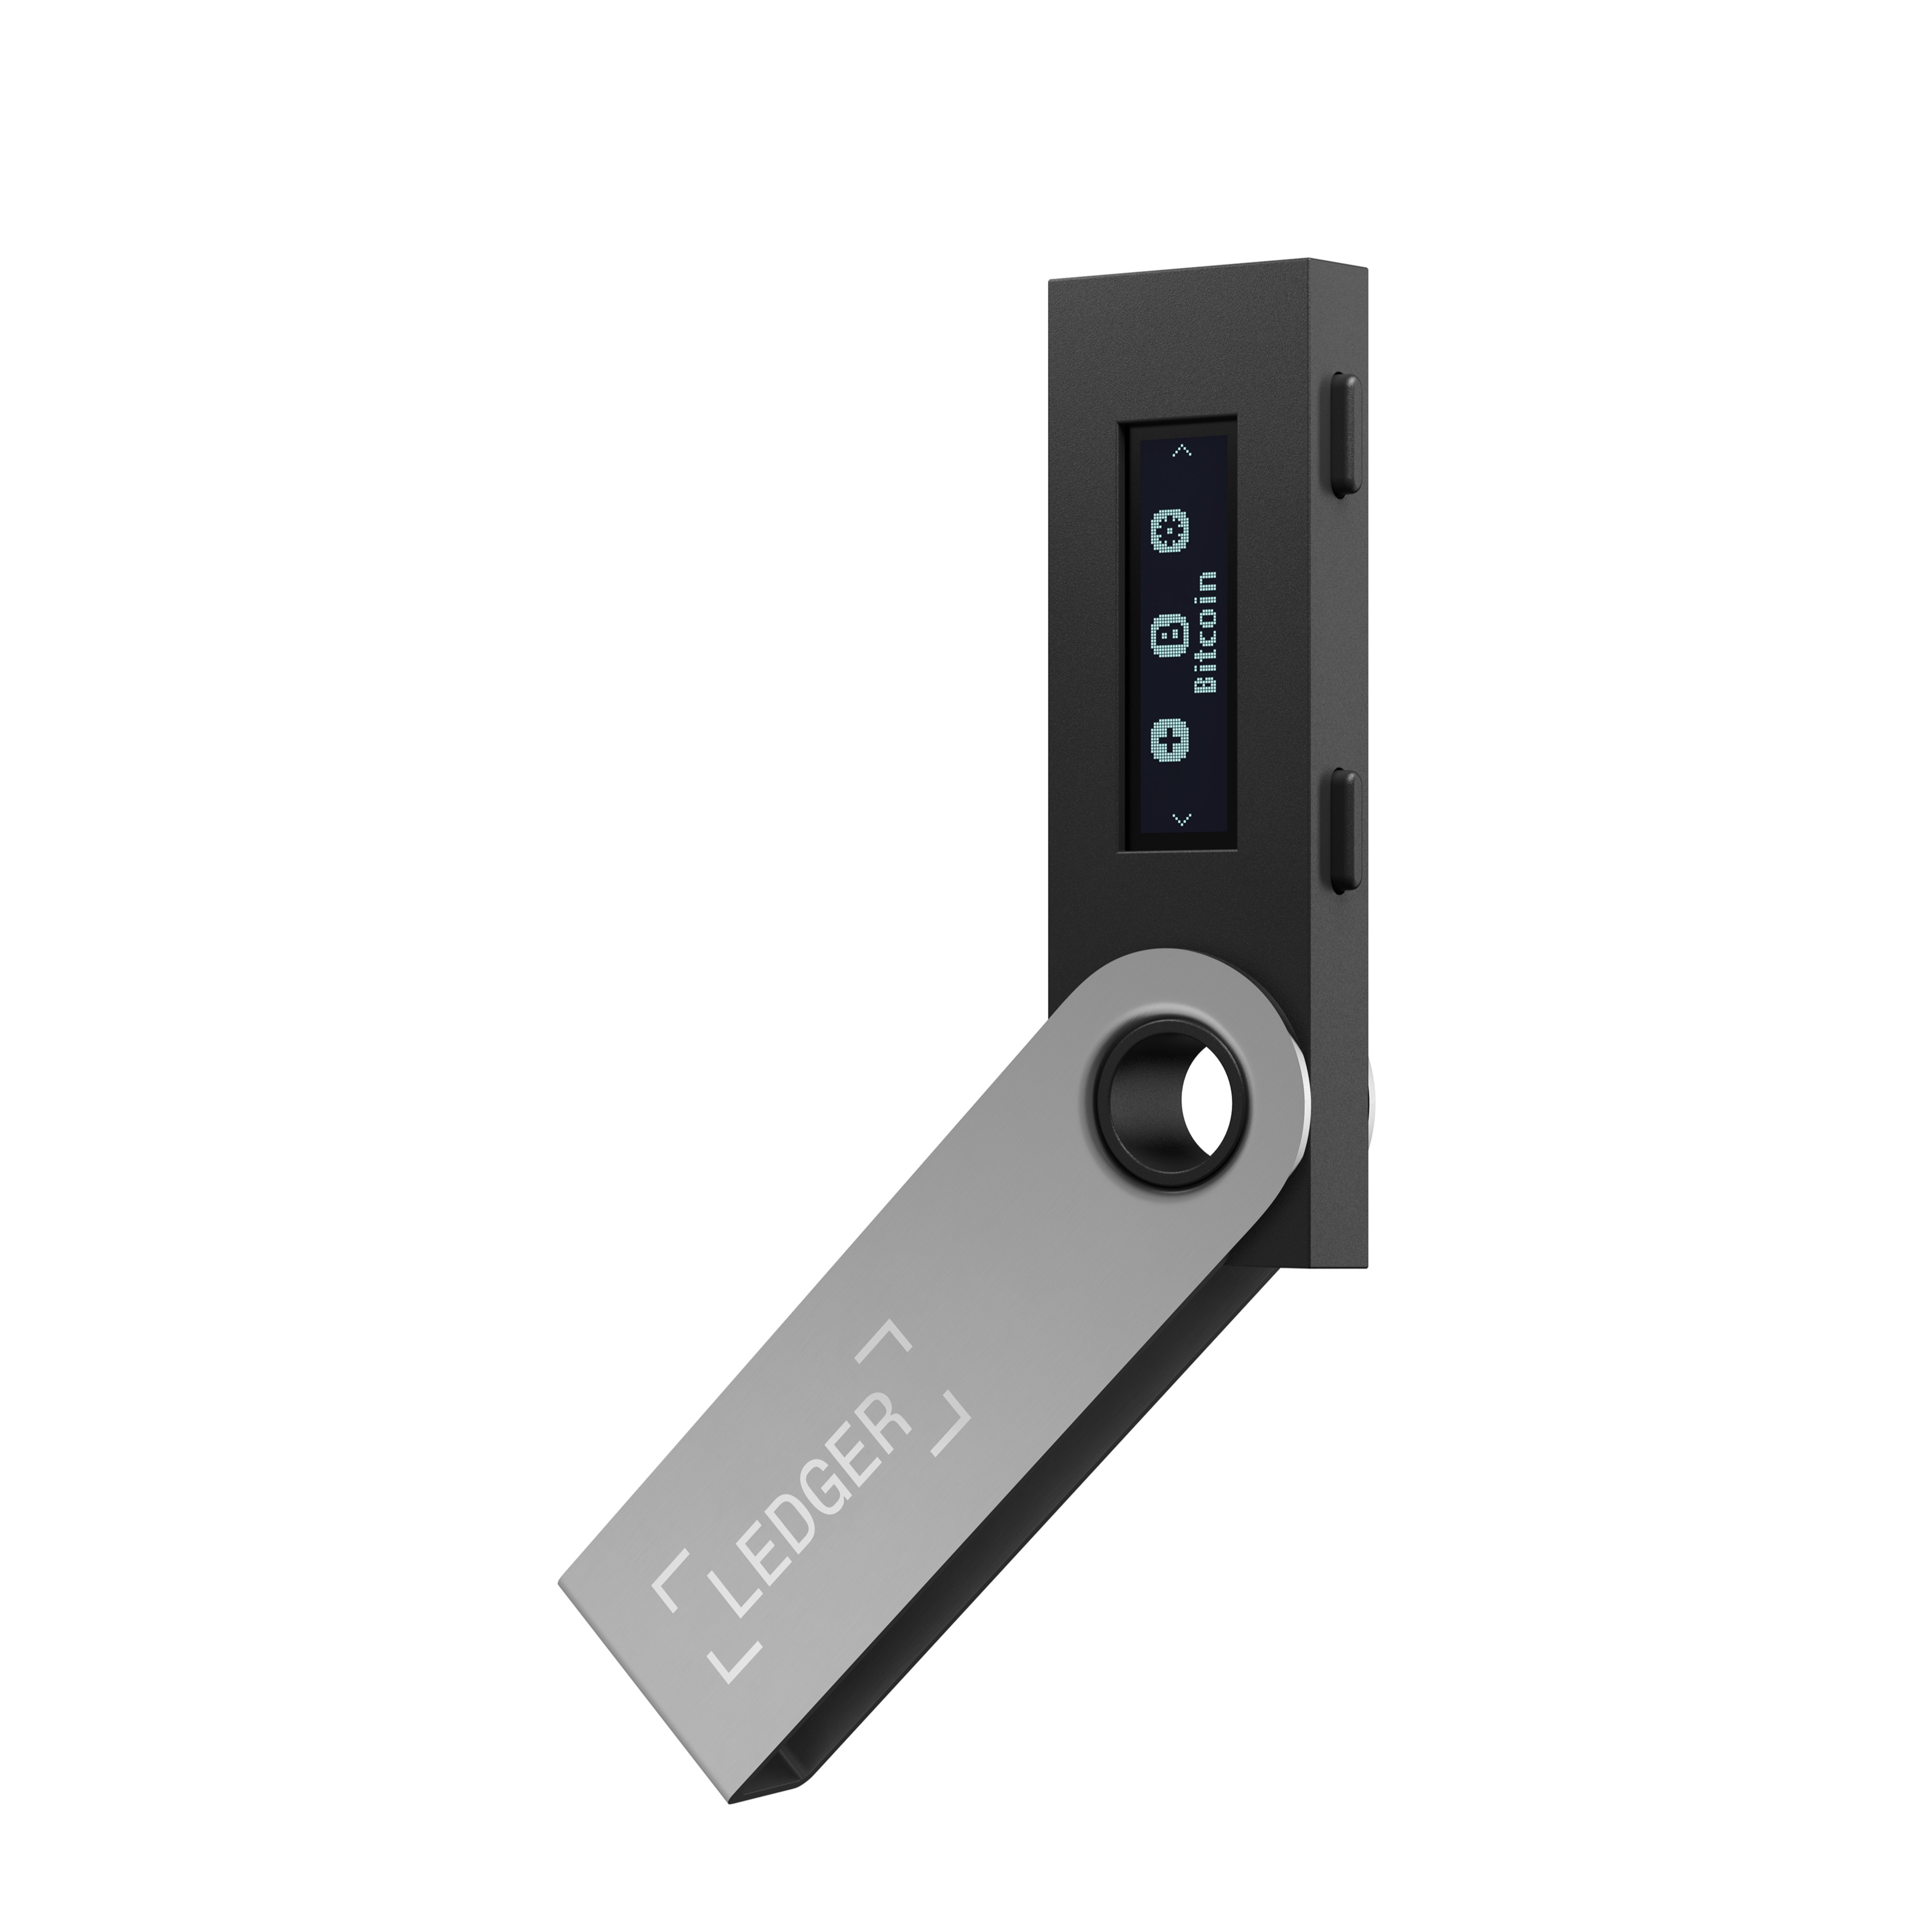 Image of Ledger Nano S Crypto Hardware Wallet Geldbörse Sicherheitschip Krypto-Währungen Bitcoin / Ethereum / ERC20 - Schwarz bei Apfelkiste.ch